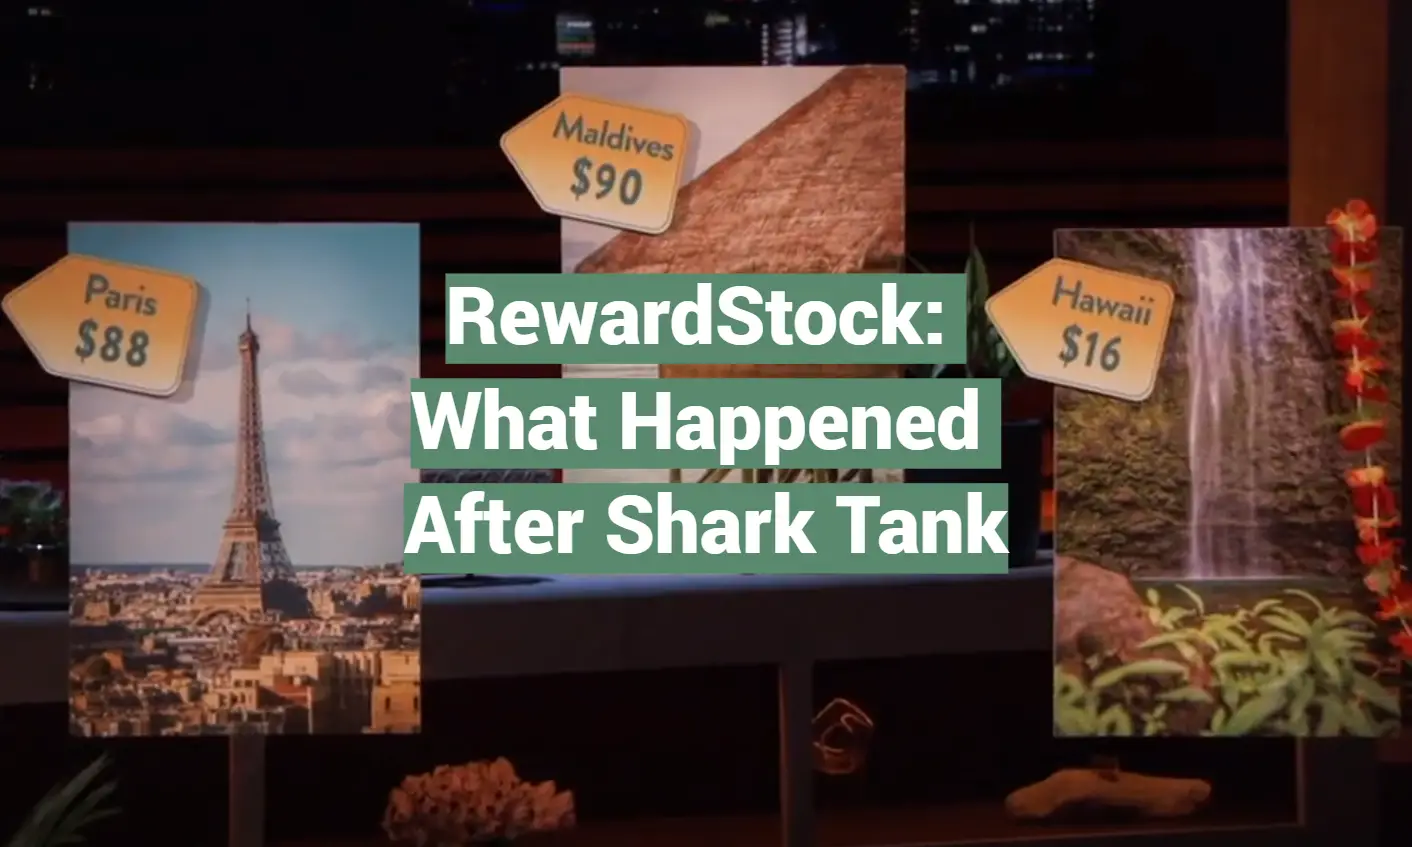 RewardStock: What Happened After Shark Tank